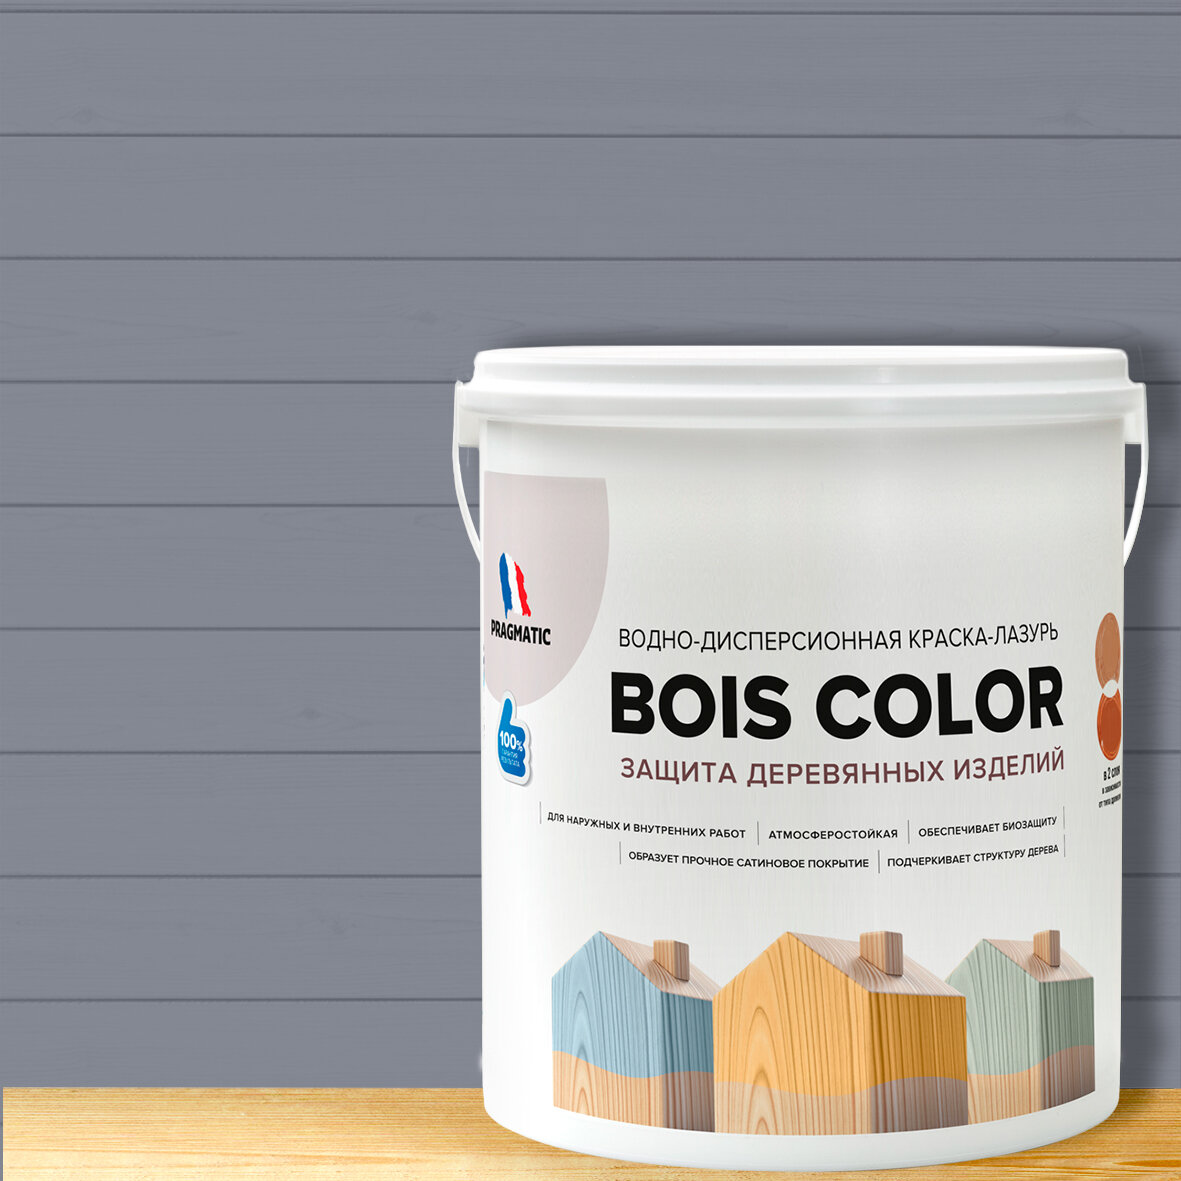 Краска (лазурь) для деревянных поверхностей и фасадов, обеспечивает биозащиту, защищает от плесени, грибков, атмосферостойкая, водоотталкивающая BOIS COLOR 0,9 л цвет Темно серый 8248